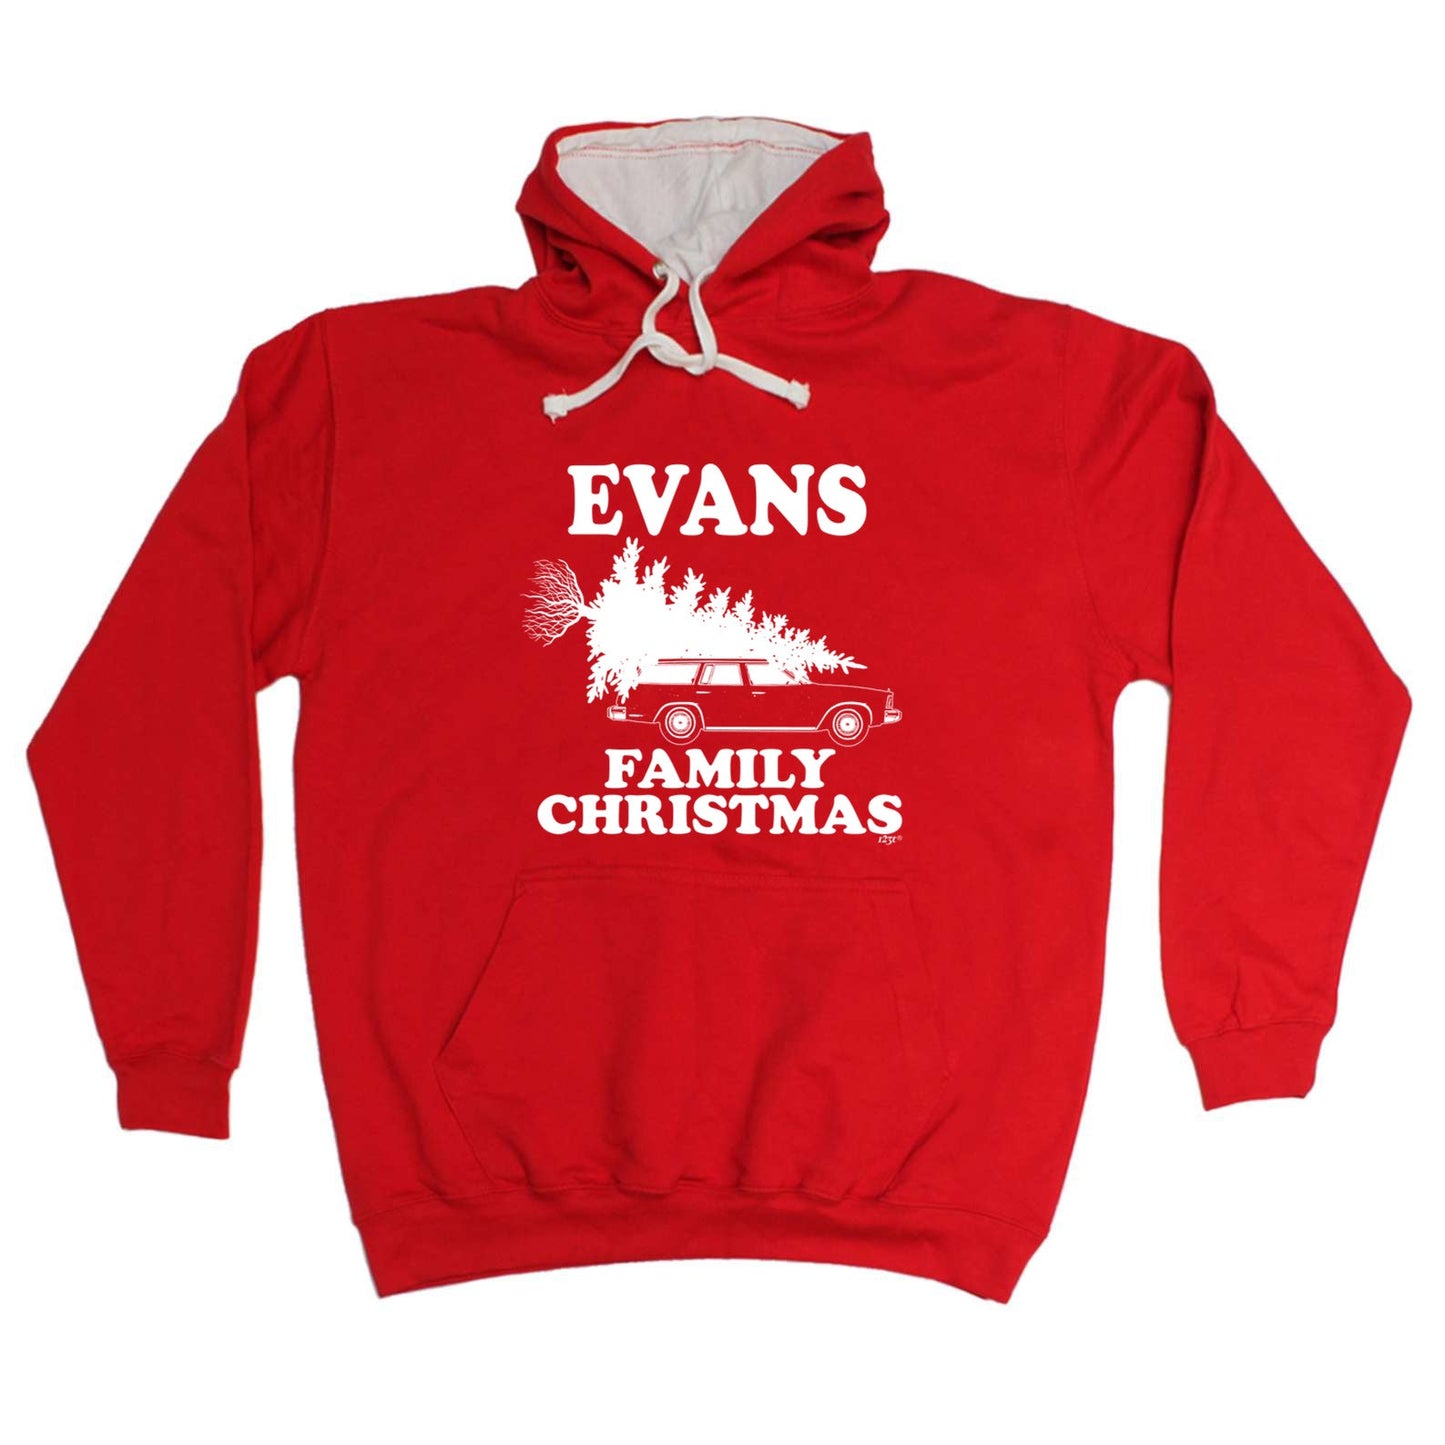 Family Christmas Evans - Xmas Novelty Hoodies Hoodie